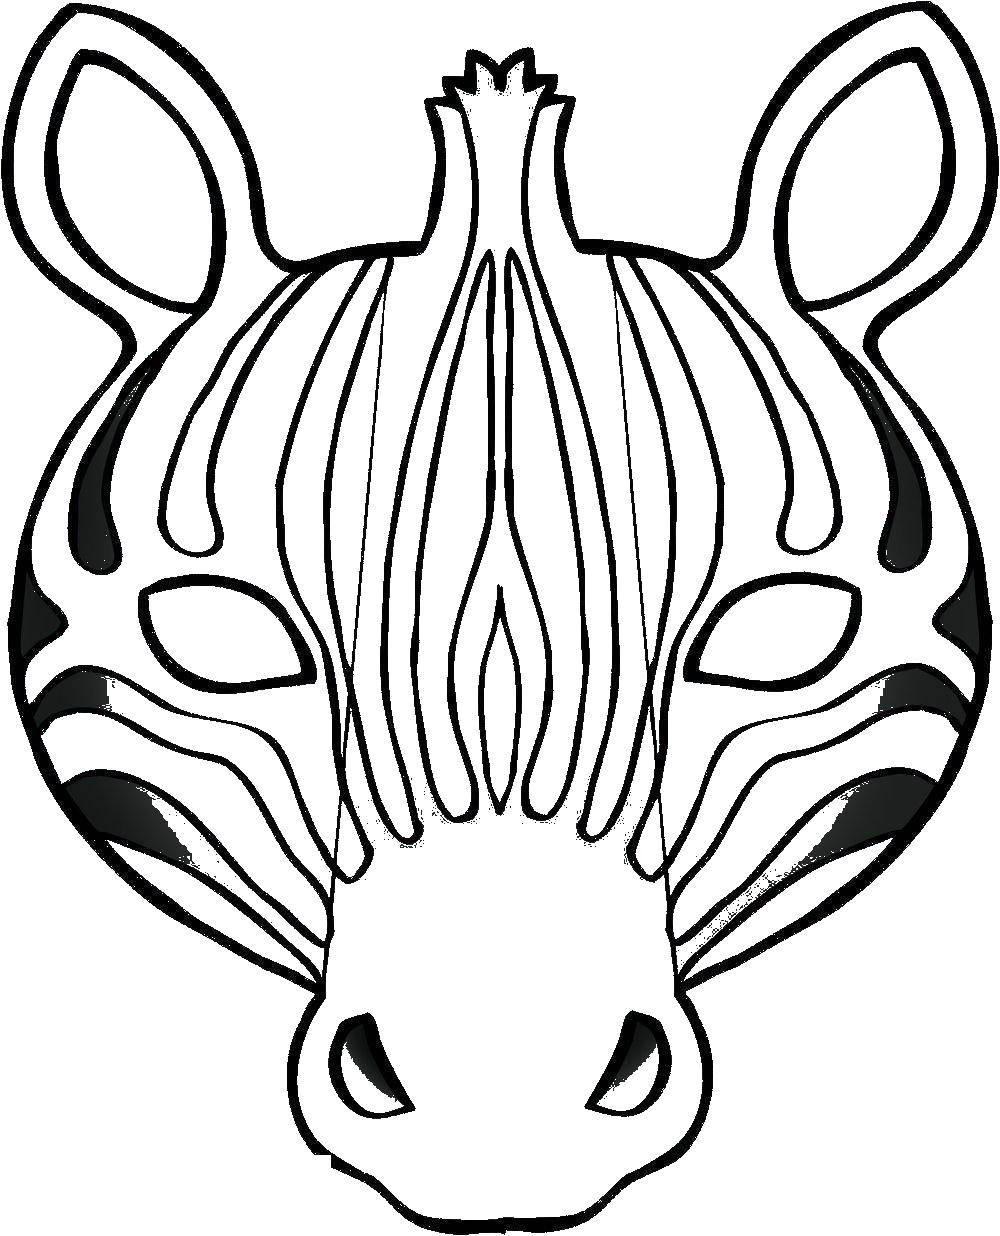 Coloring Mask Zebra. Category Masks . Tags:  mask, Zebra.